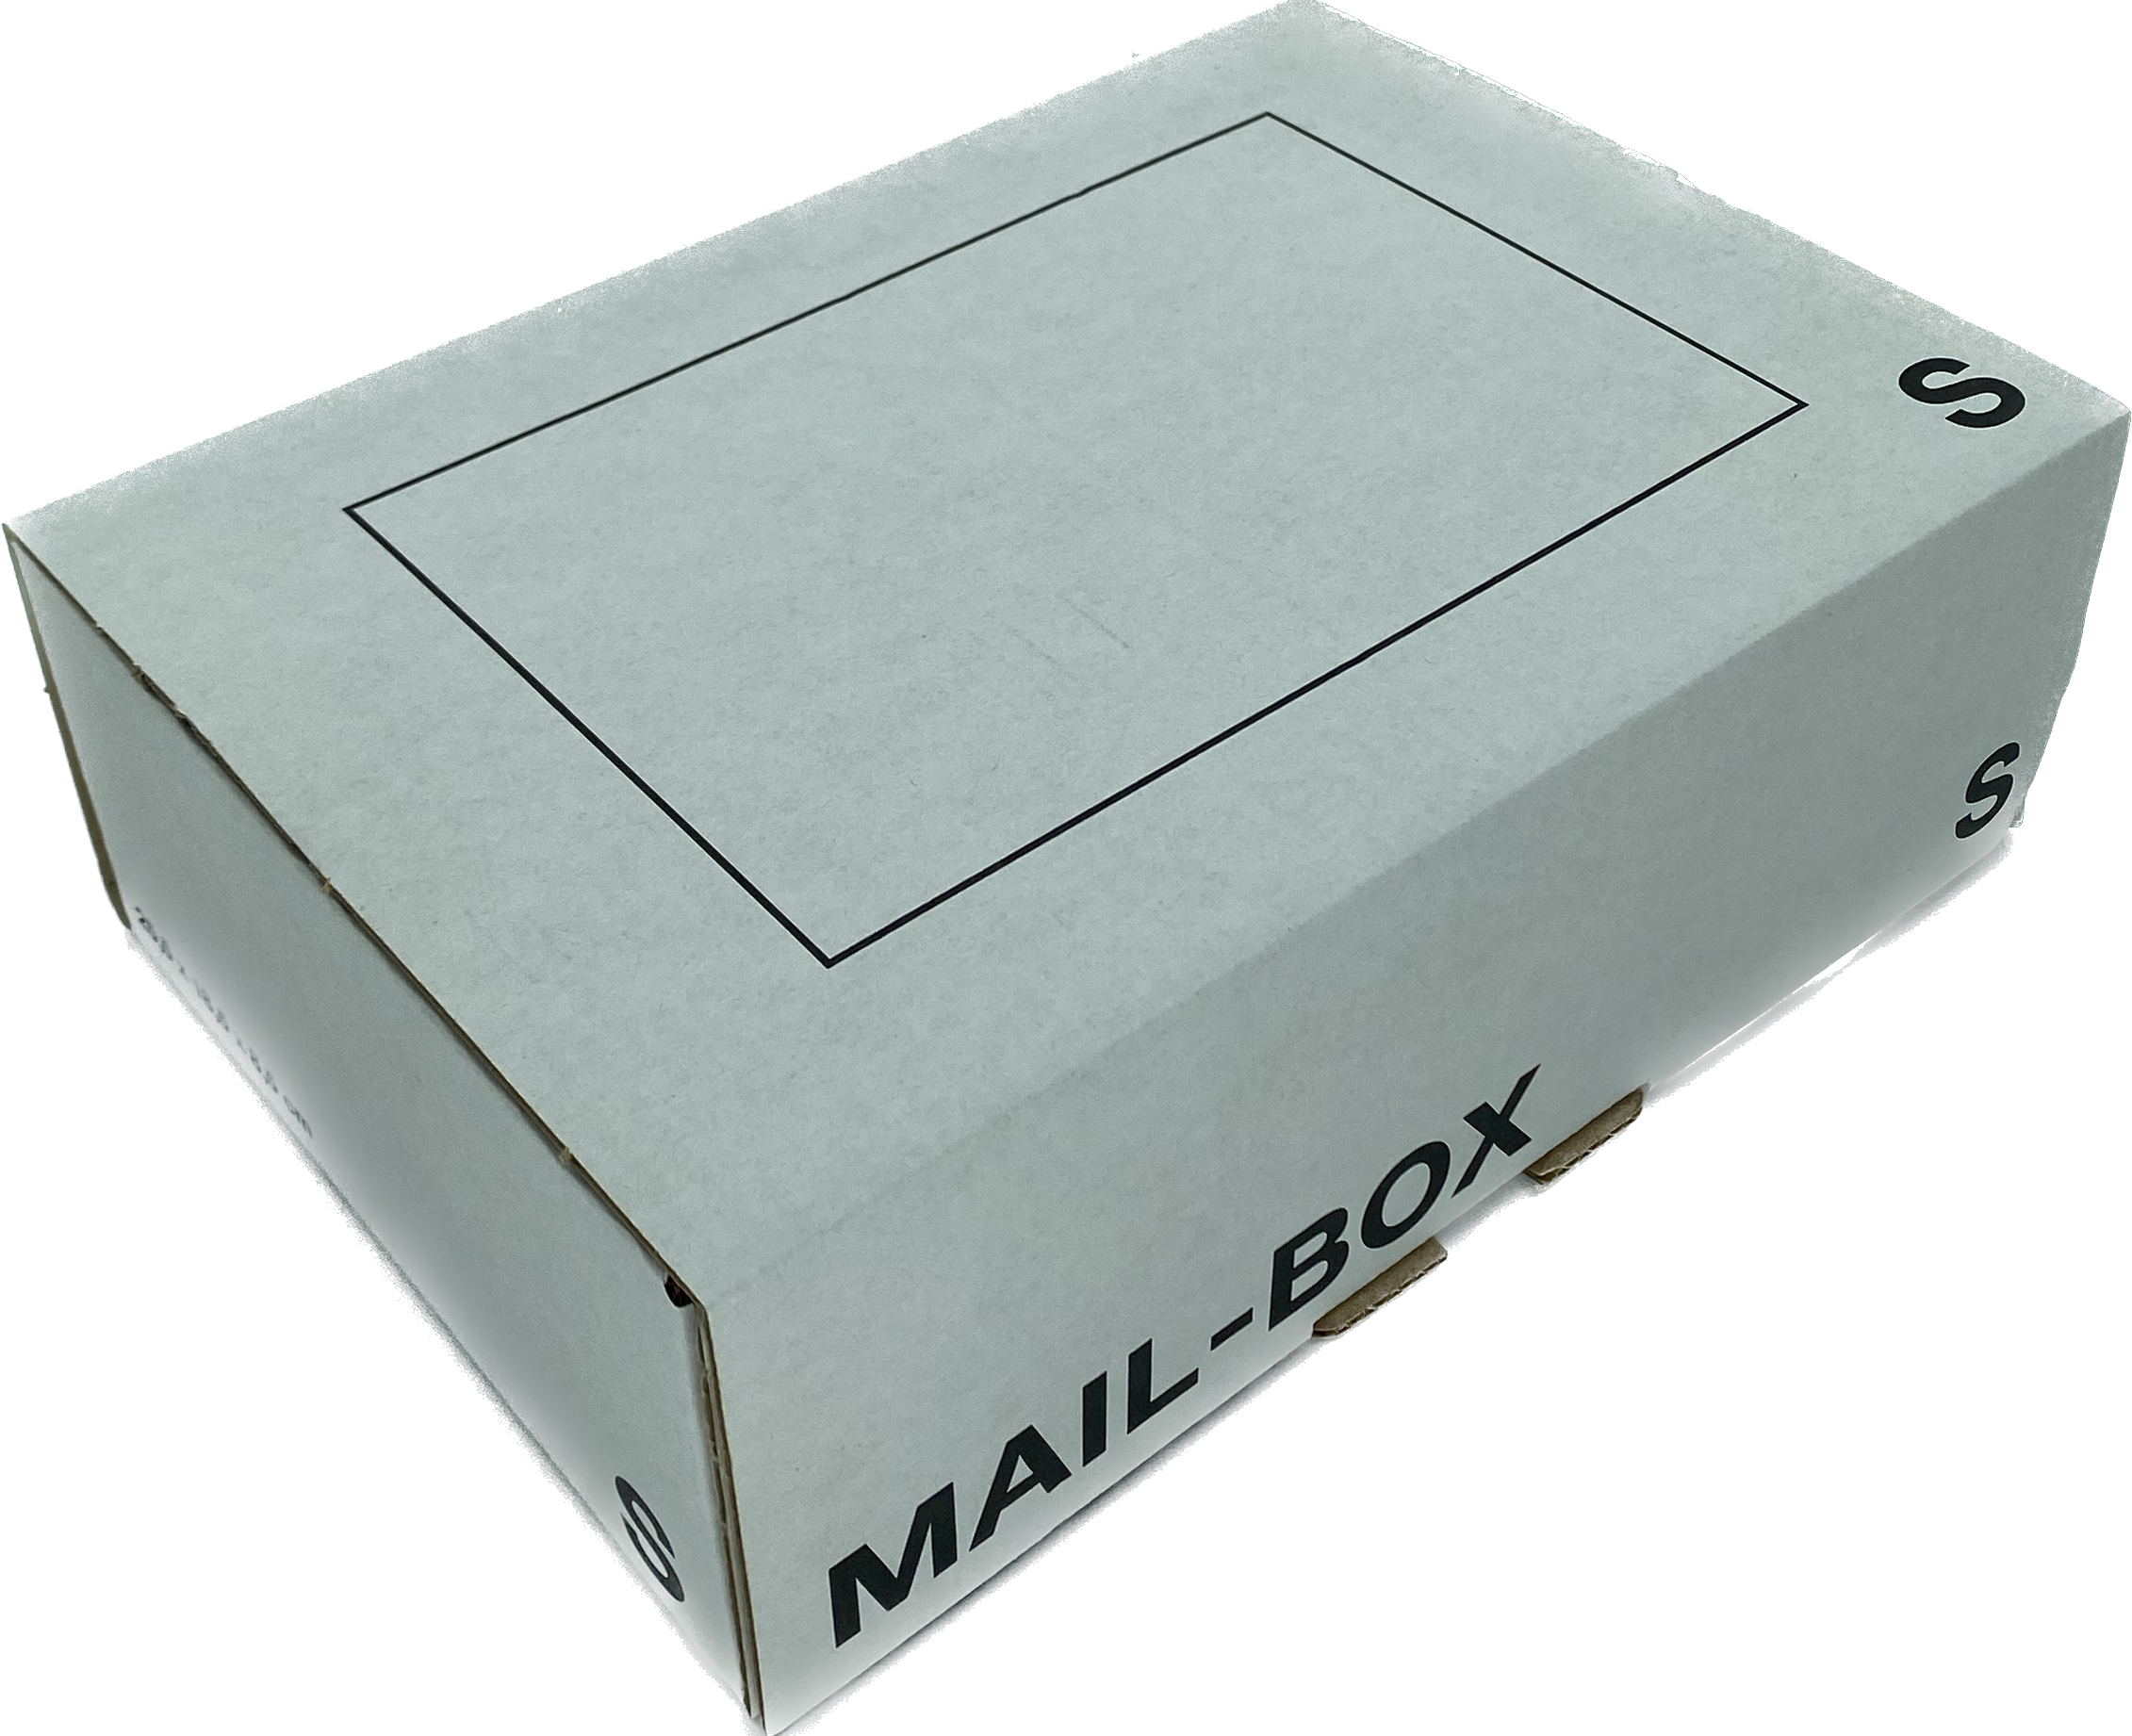 Mailbox-Karton S, 255 x 185 x 85mm, weiß